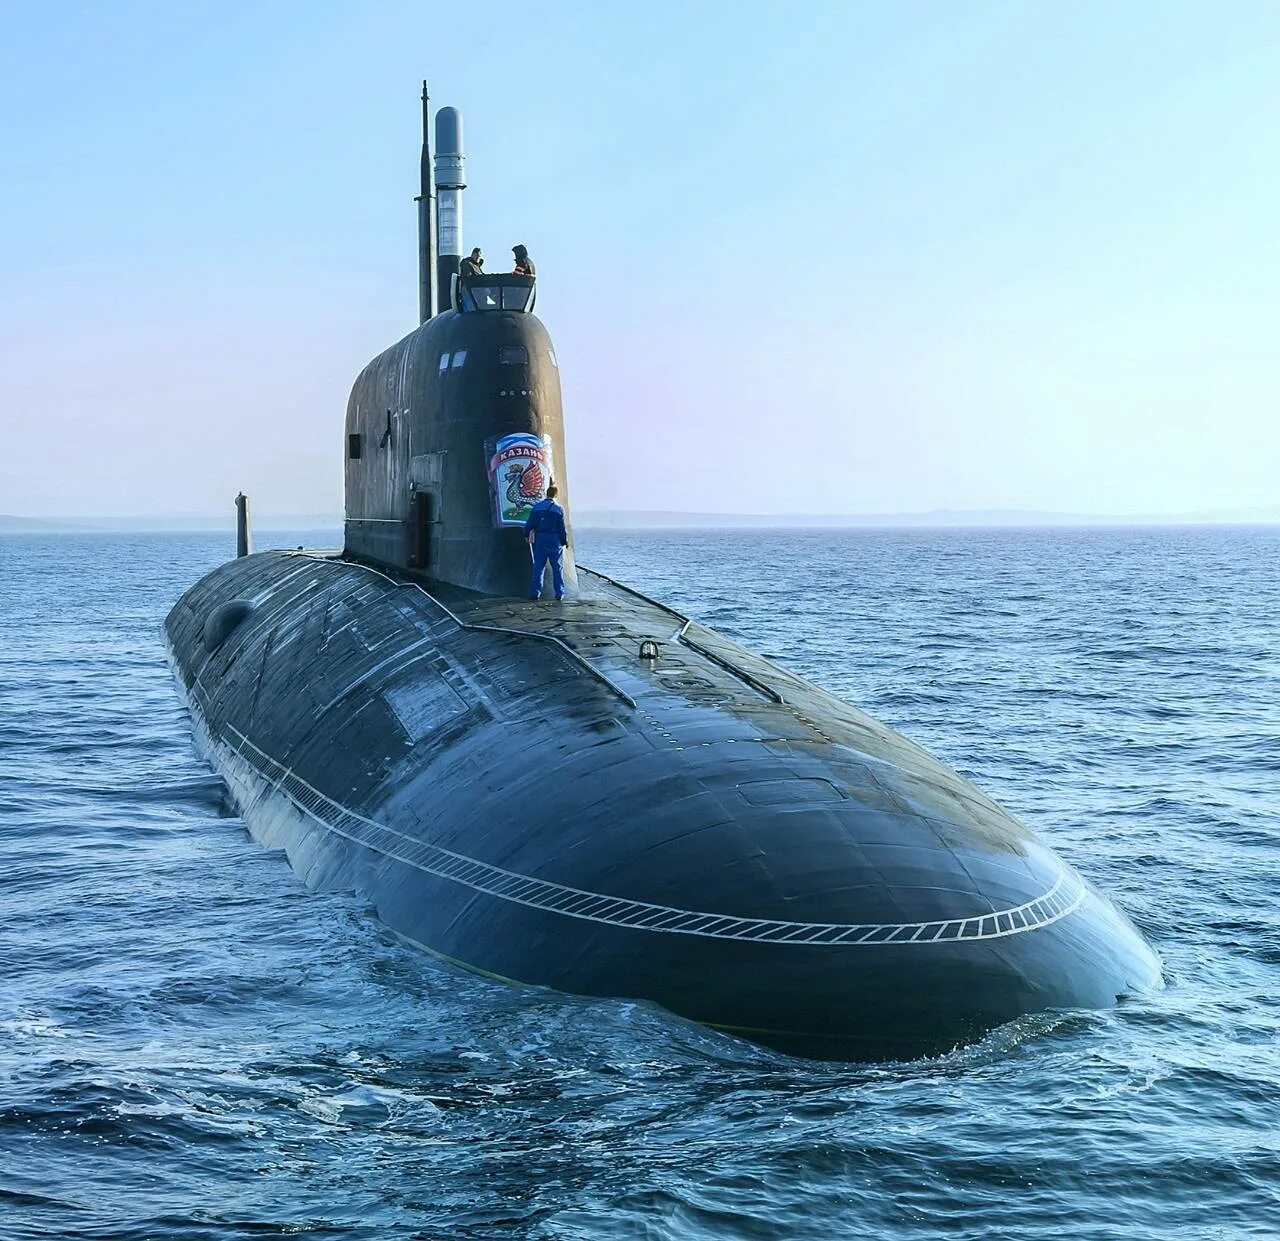 Лодки пл. Подводная лодка 885м ясень-м. Атомная подводная лодка Казань. Подводные лодки проекта 885 ясень 885м ясень-м. Атомный подводный крейсер к-561 Казань.